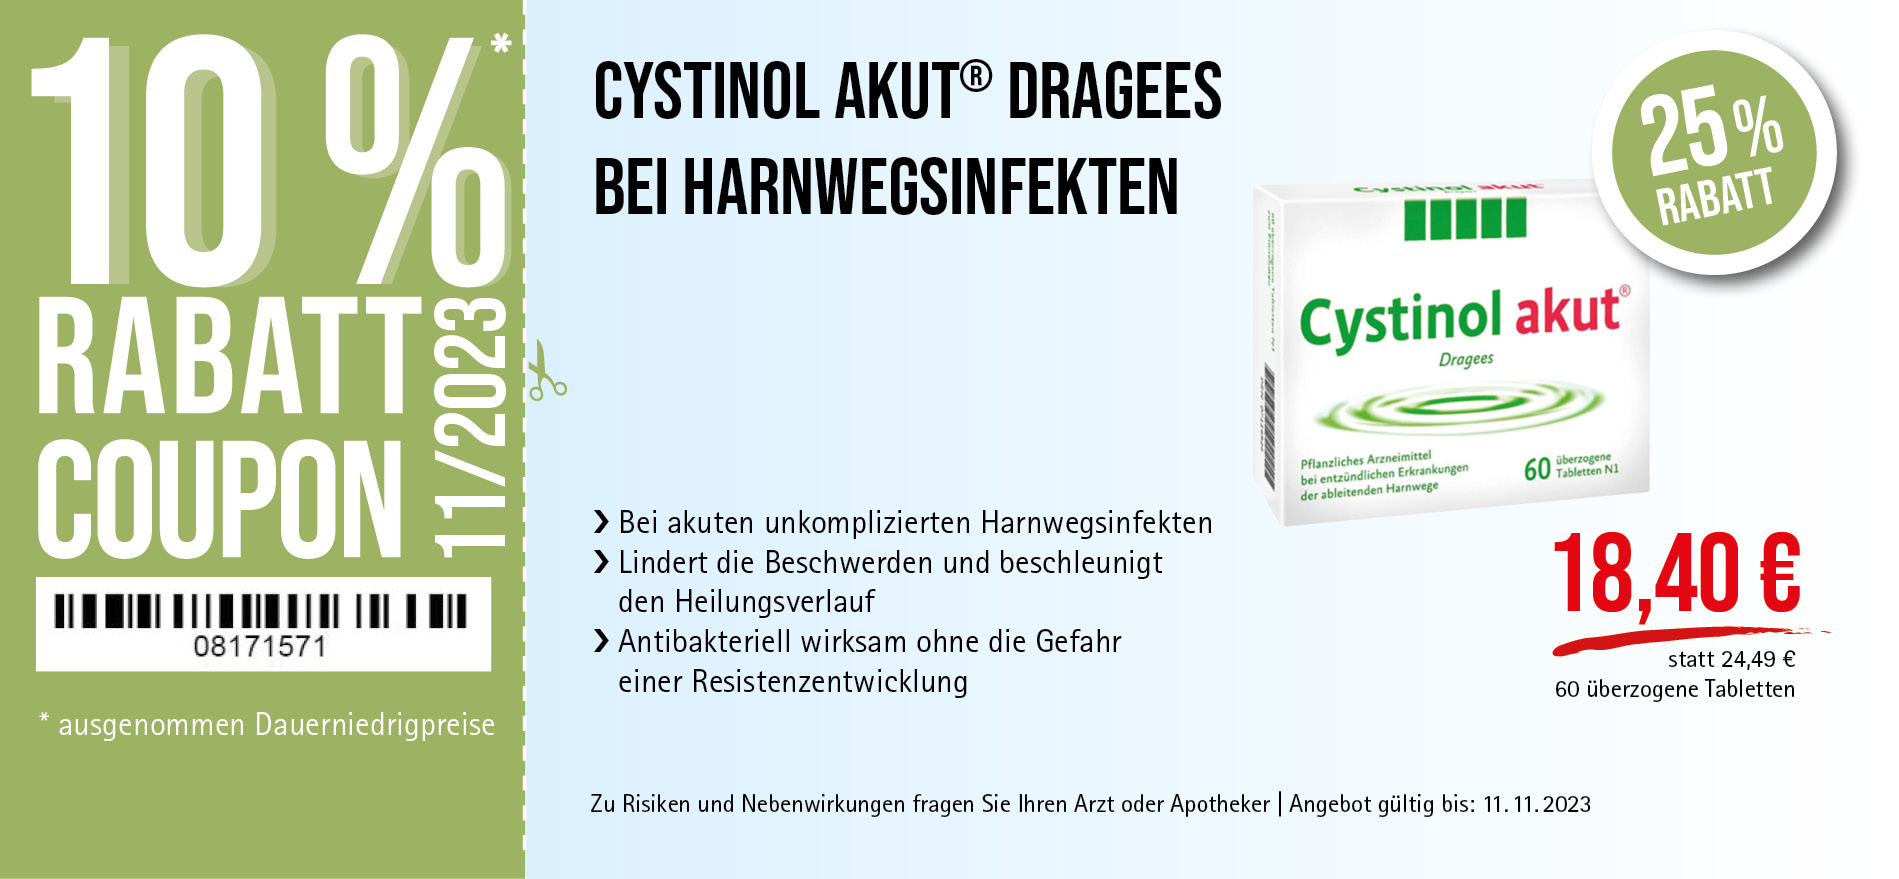 Cystinol akut® Dragees, 18,40€ statt 24,49€, Angebot gültig bis 11.11.2023